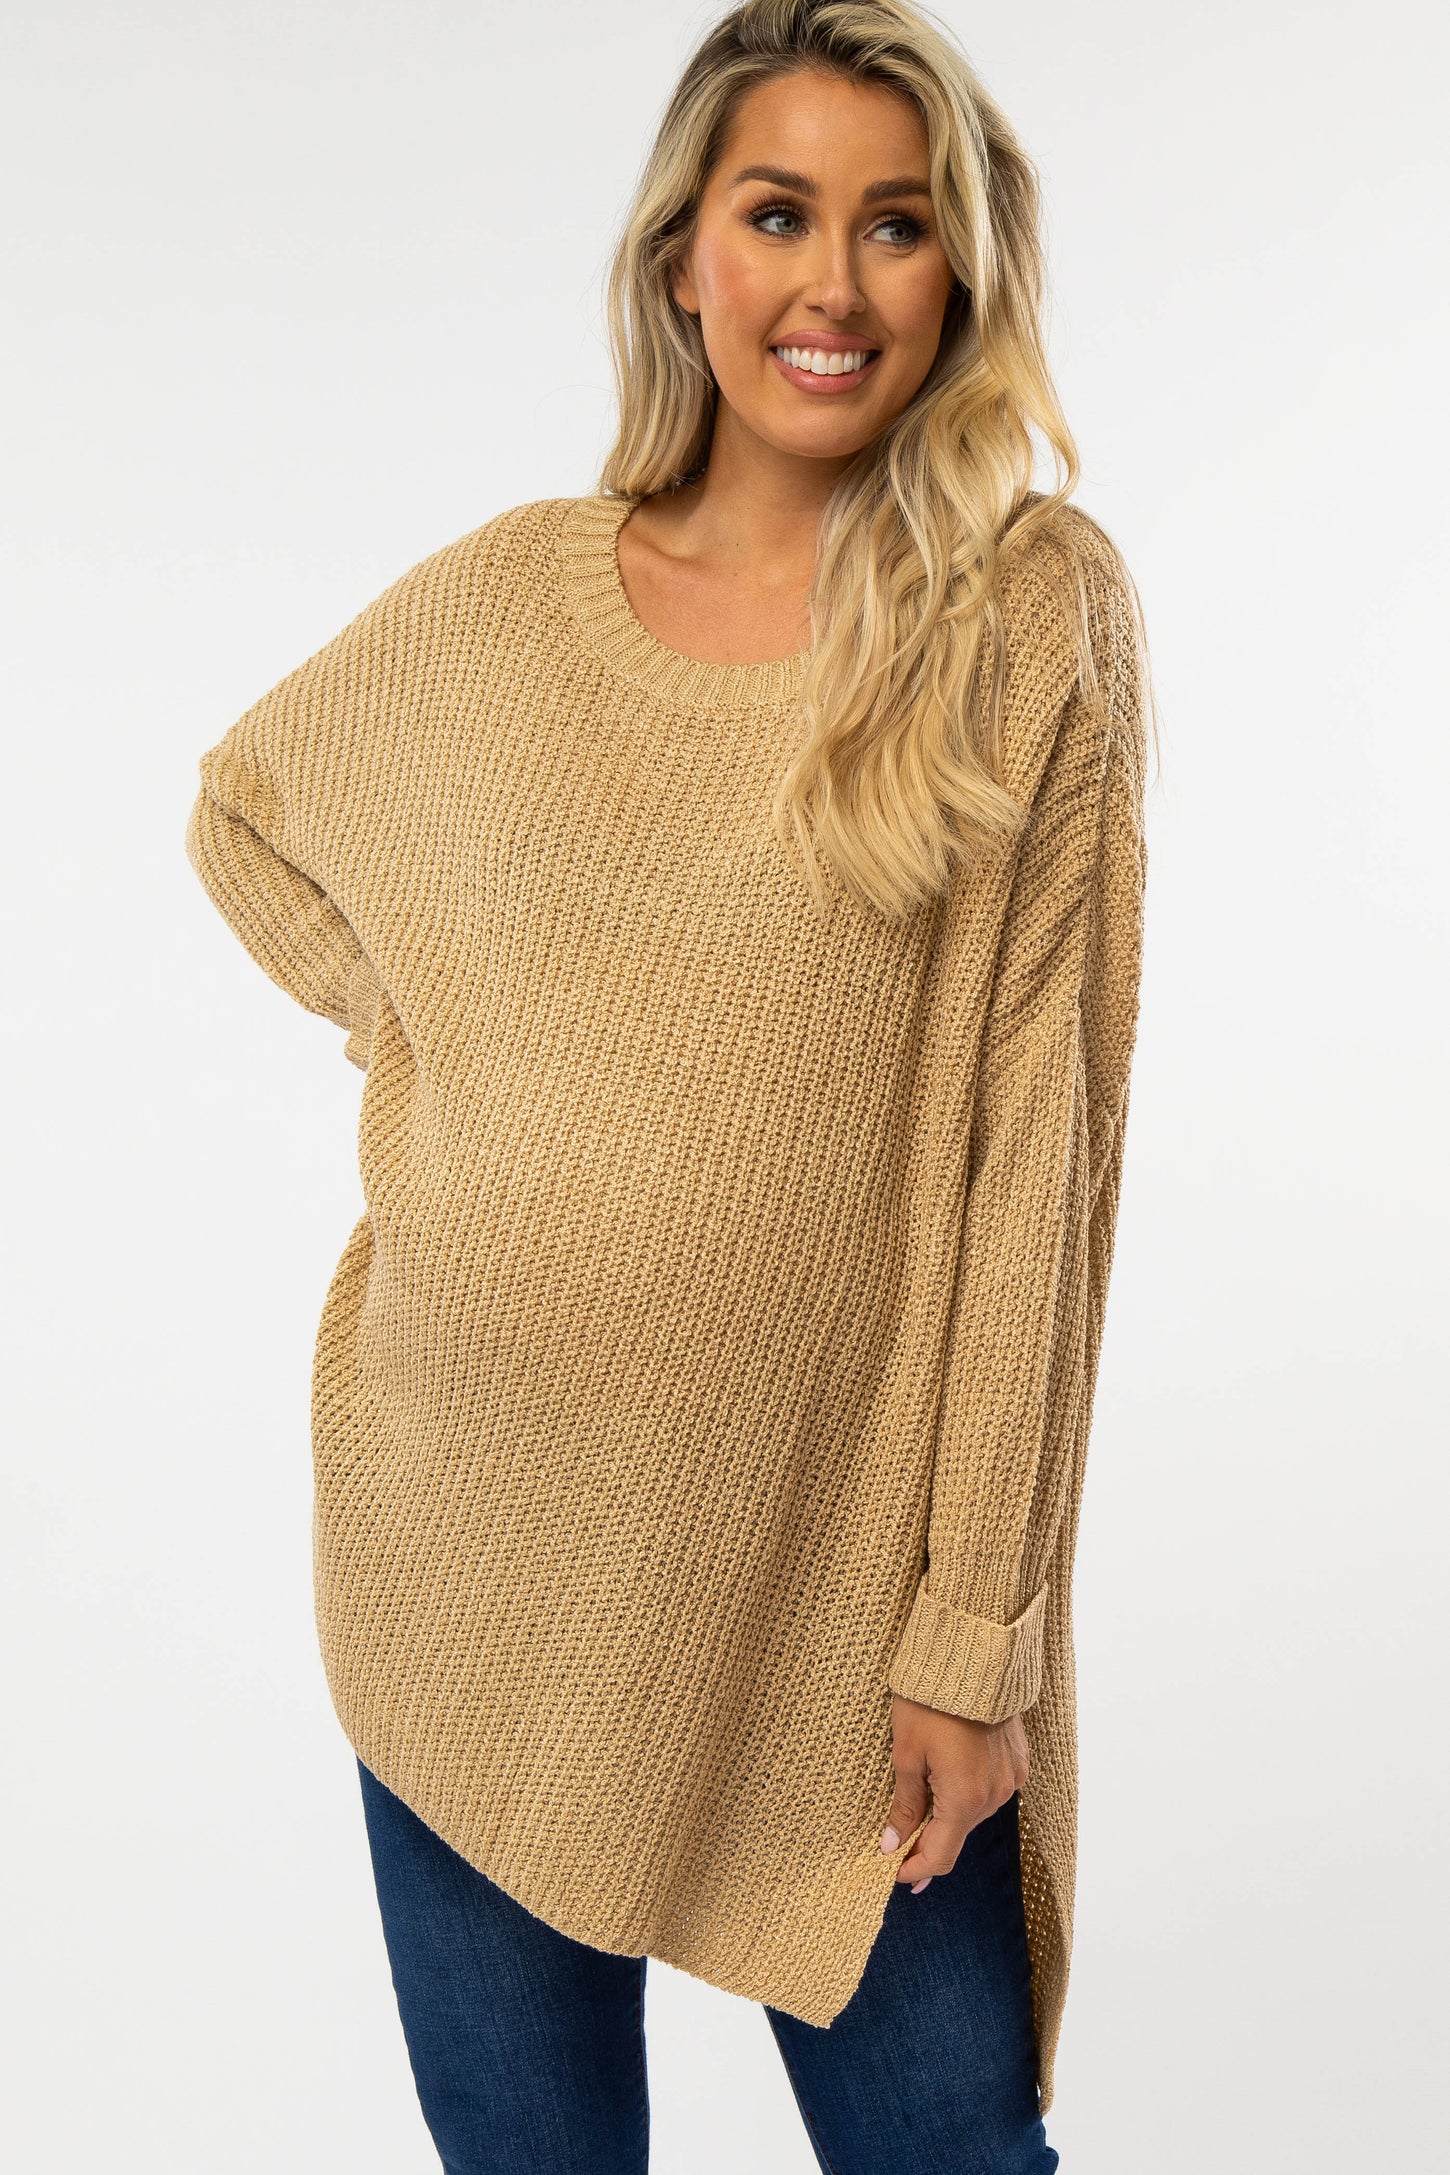 Beige Hi Low Side Slit Cuff Sleeve Maternity Sweater